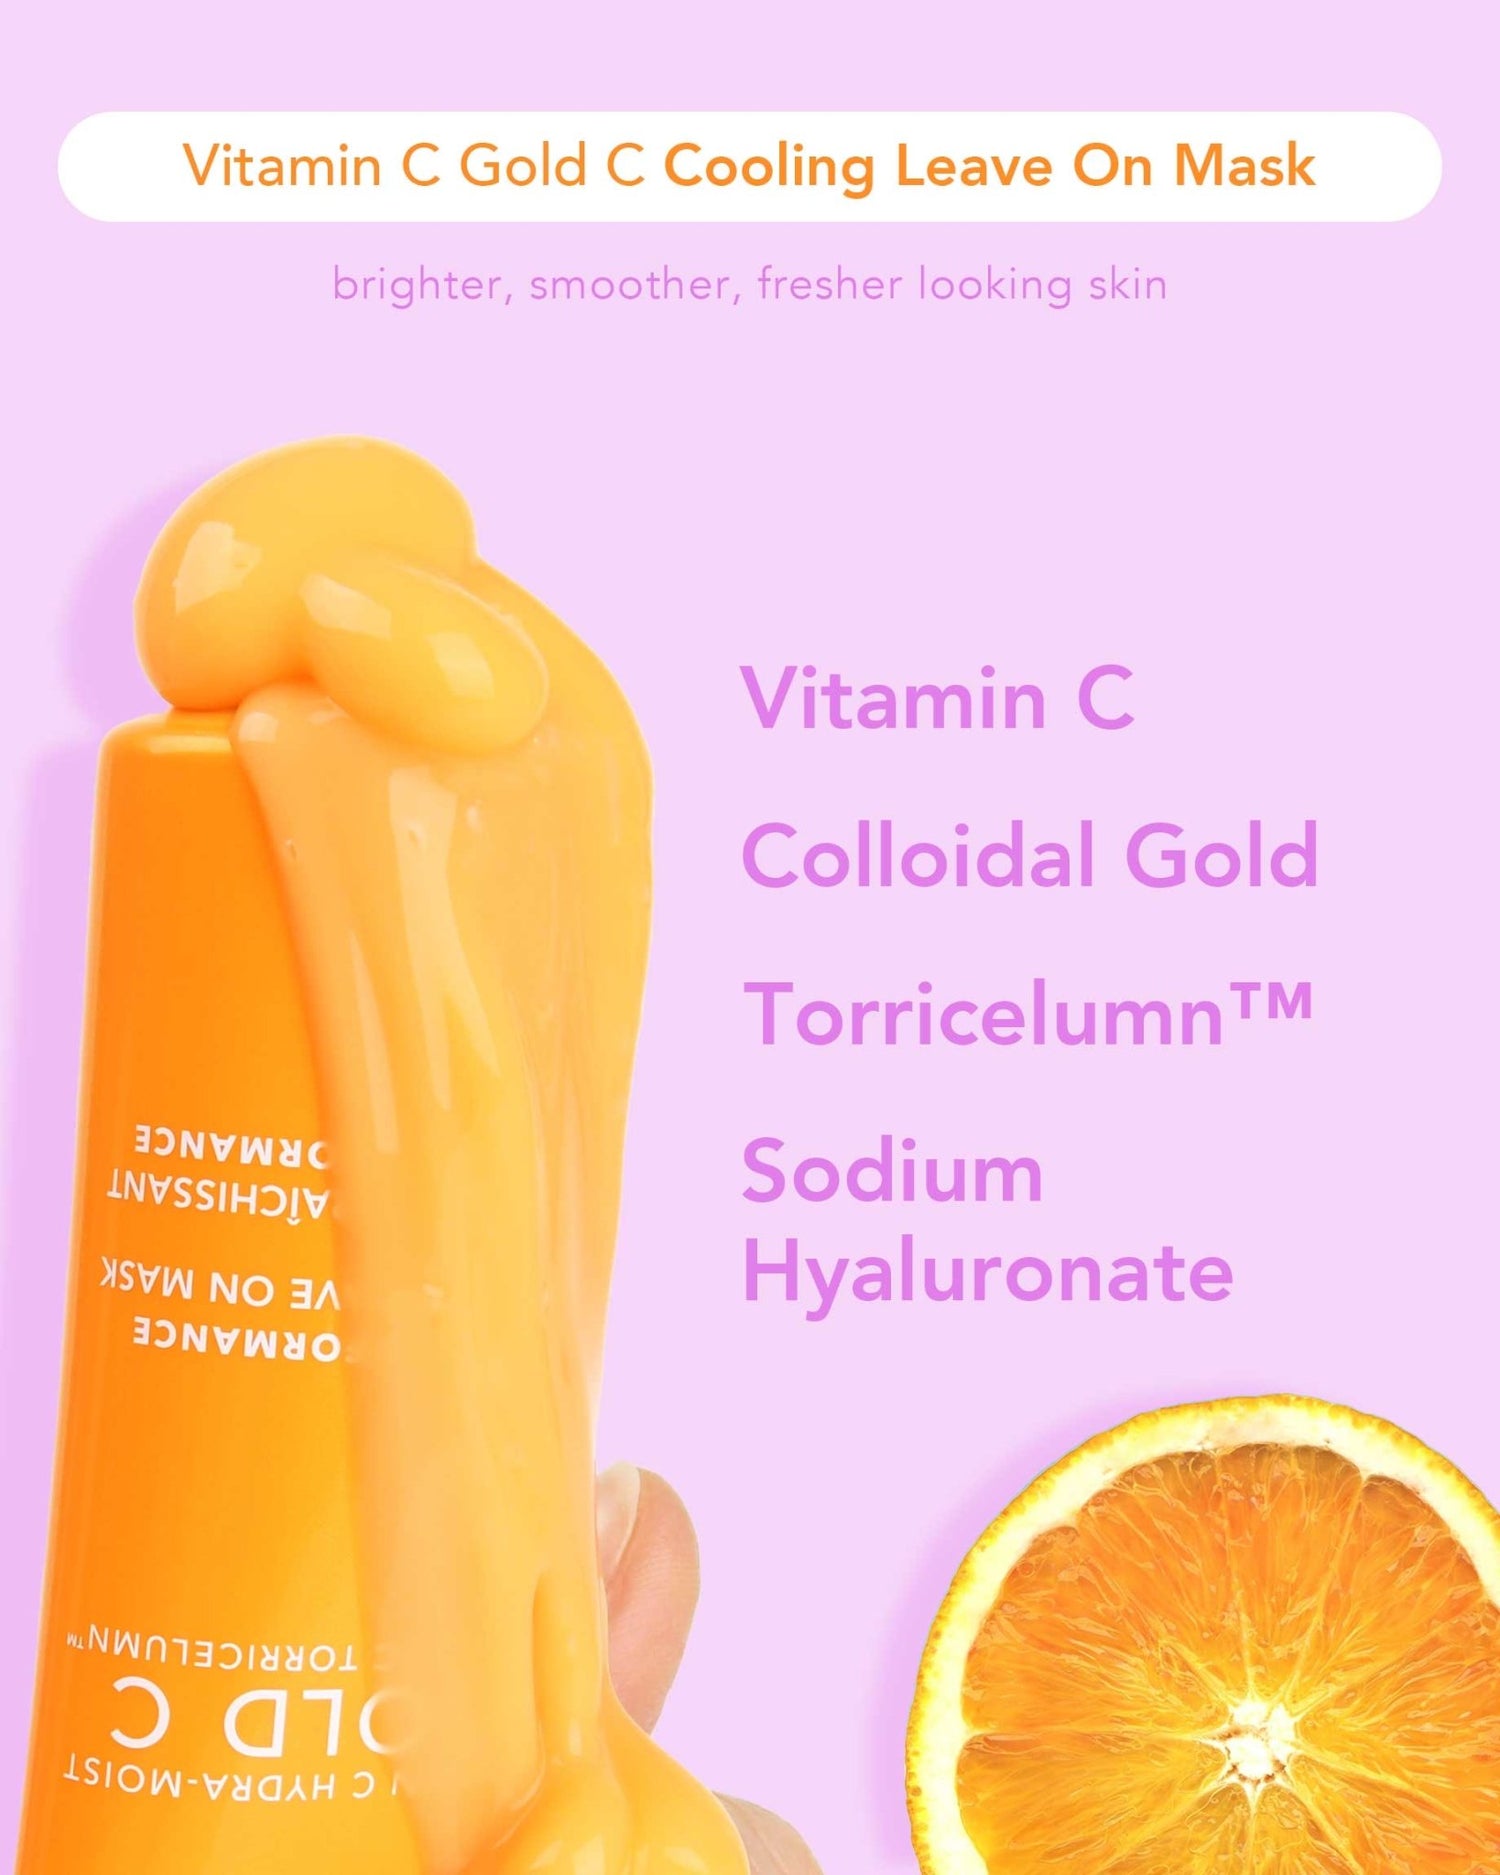 Vitamin C Gold C Cooling Leave On Mask - Elizabeth Grant Skin Care